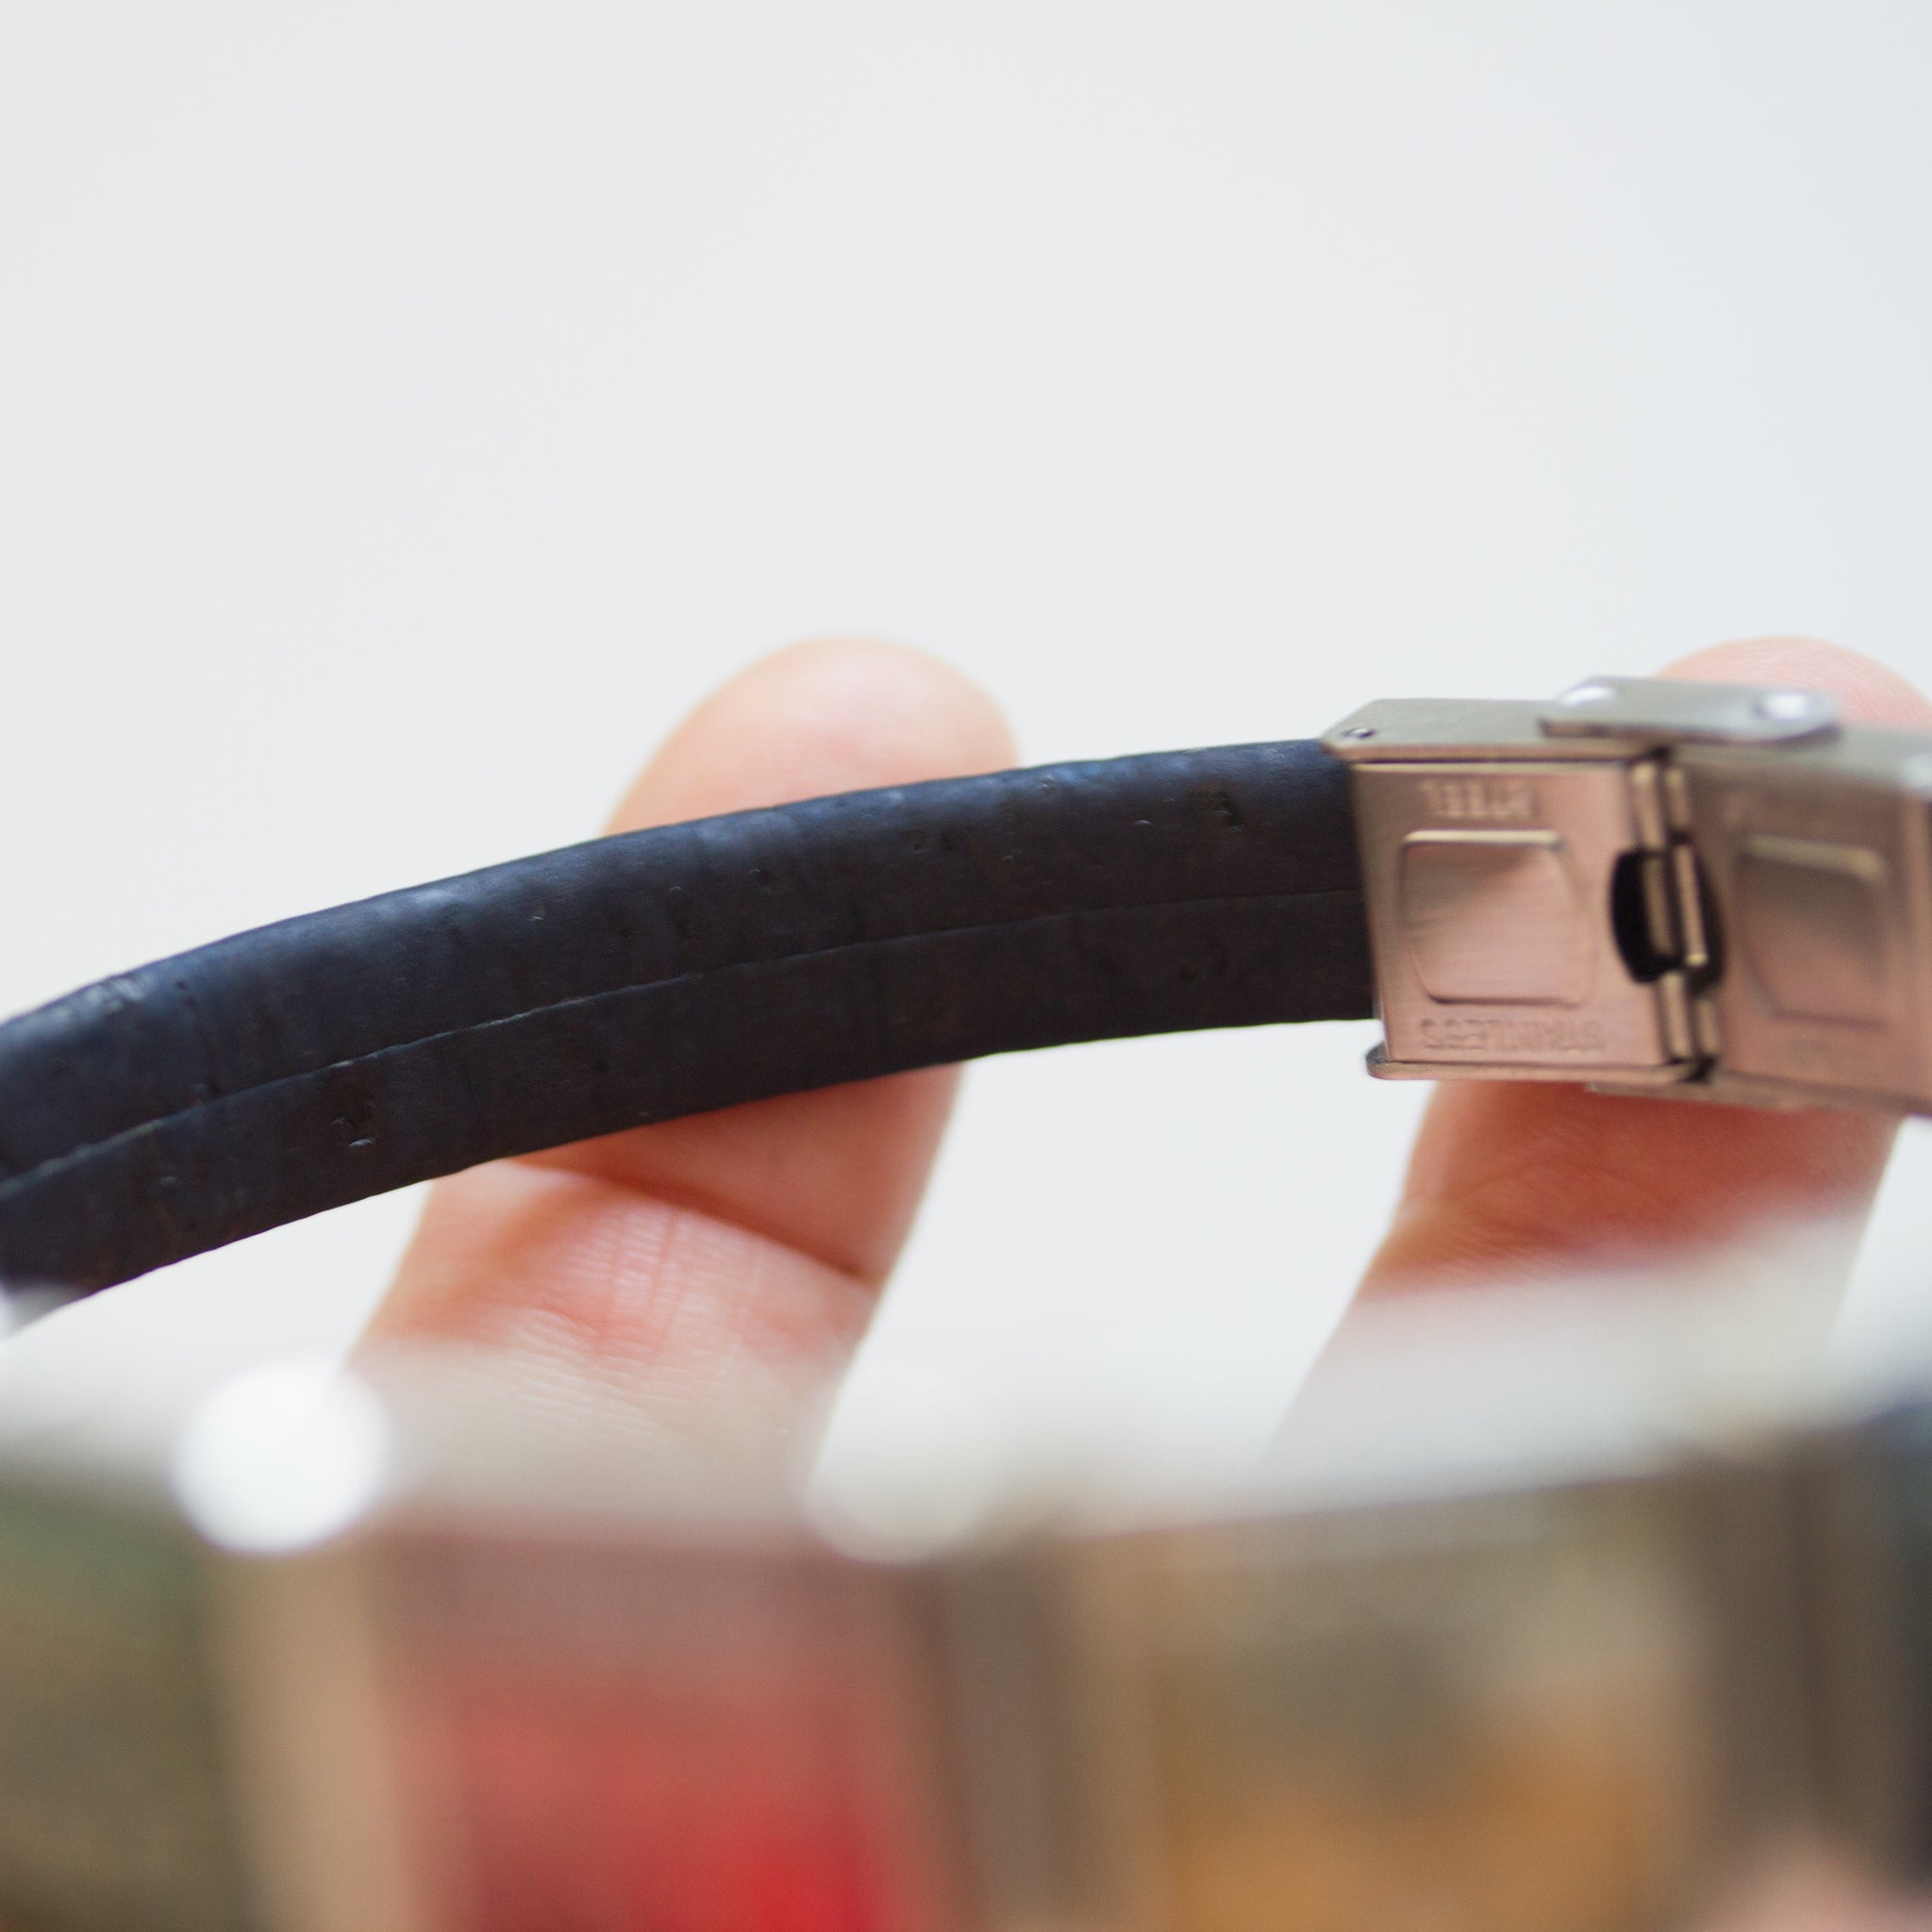 Black vegan cork bracelet, 3 or 5 circuit board beads, unisex bracelet, adjustable